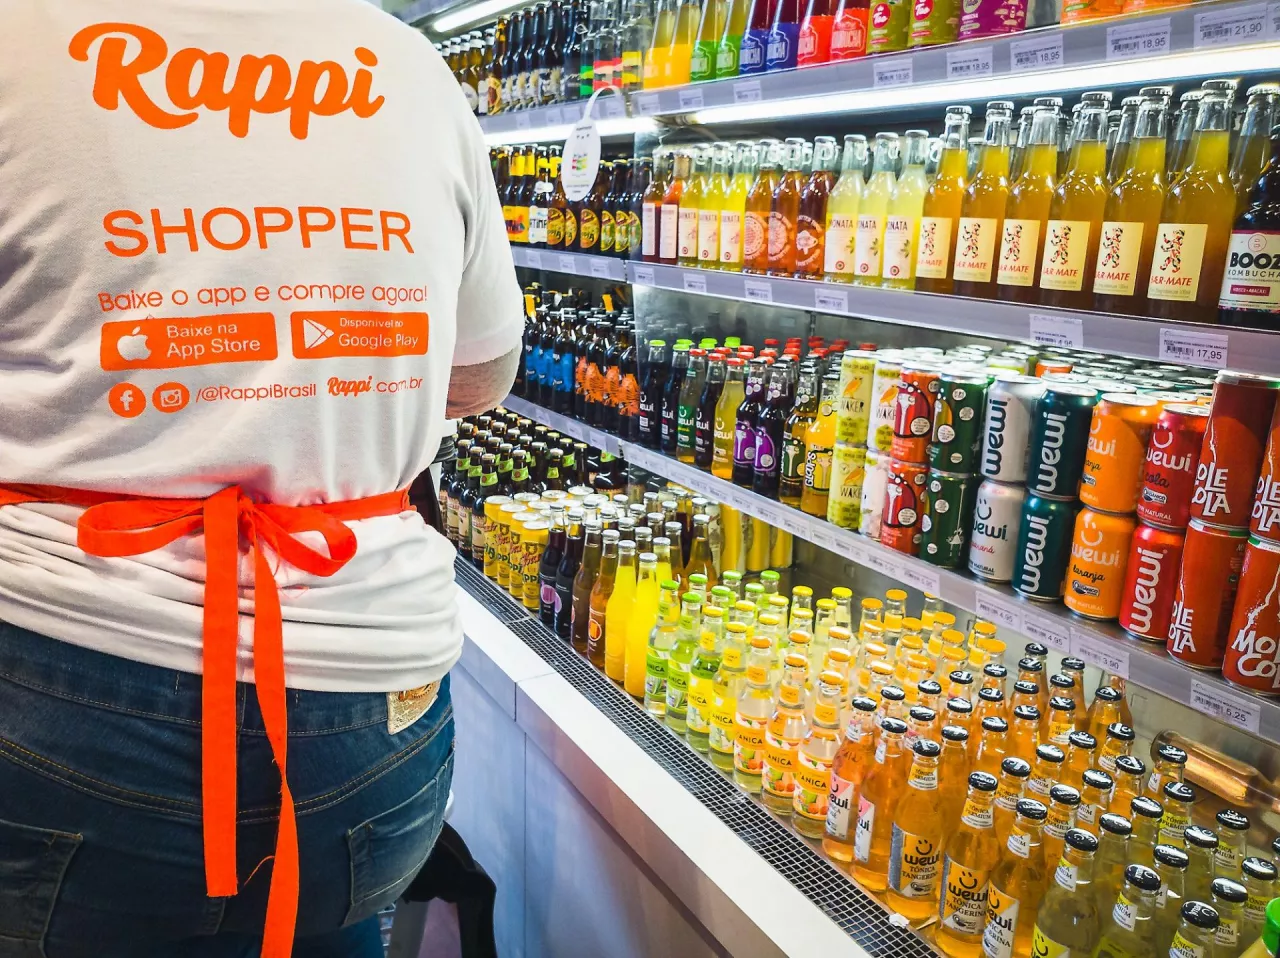 Na zdj. shopper kolumbijskiej platformy q-commerce Rappi kompletujący zamówienie w sklepie (fot. Antonio Salaverry / Shutterstock)